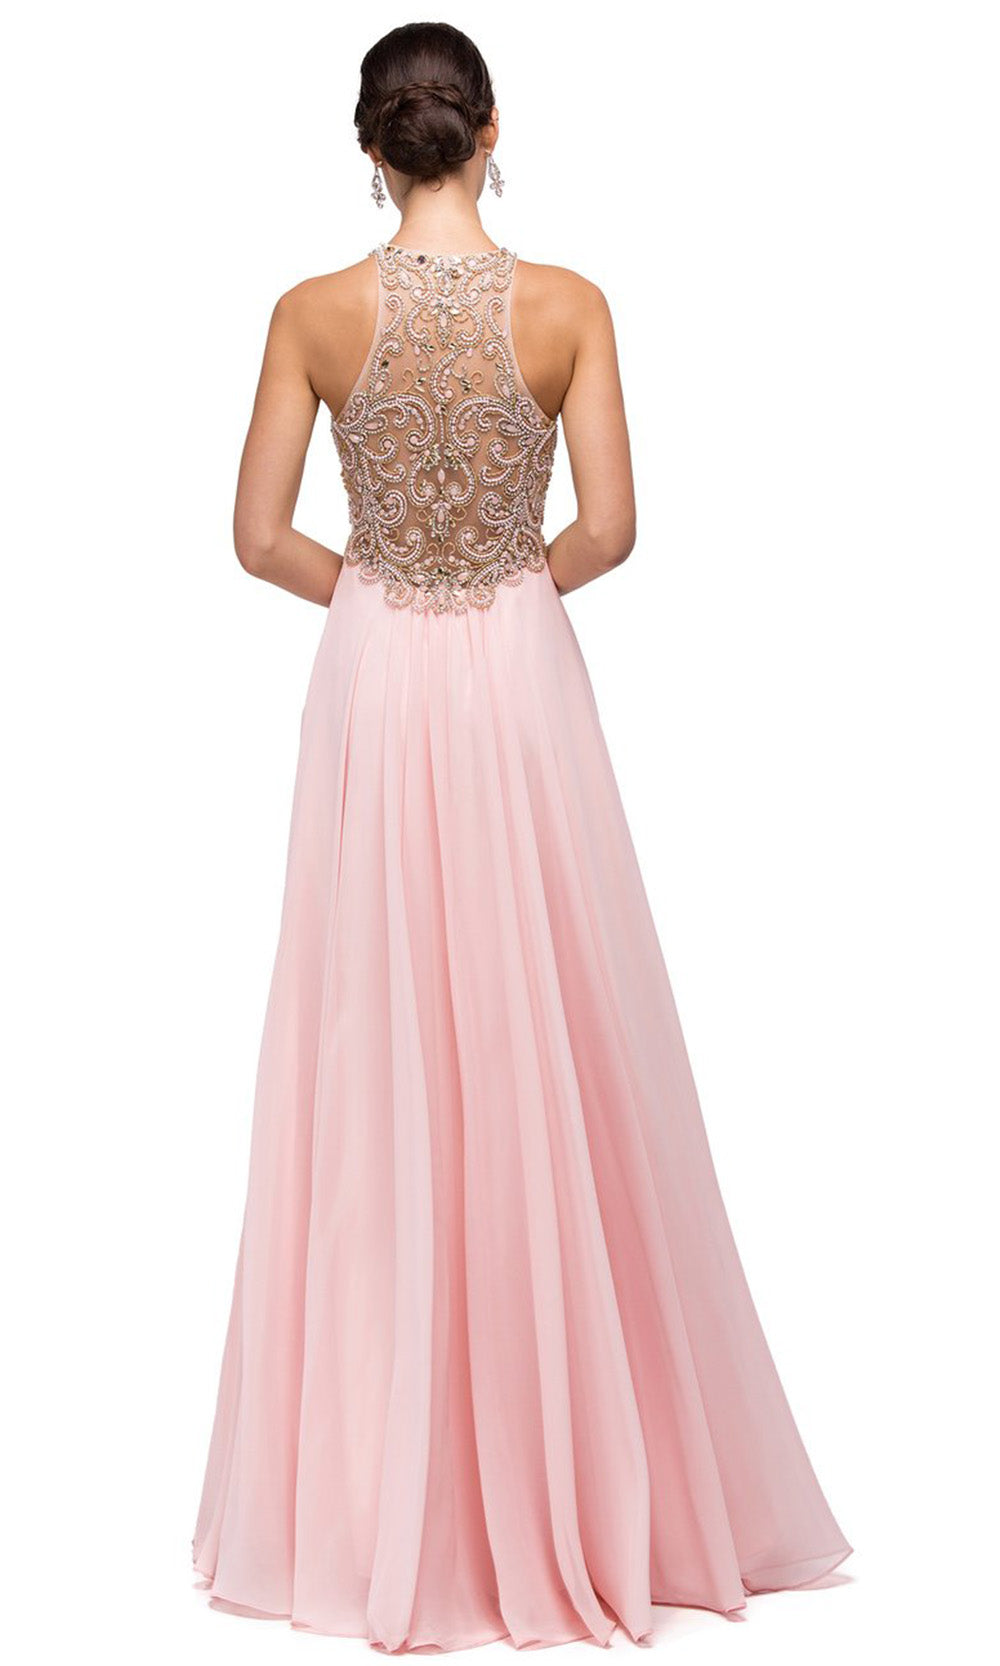 Dancing Queen - 9776 Beaded Halter Bodice A-Line Dress In Pink